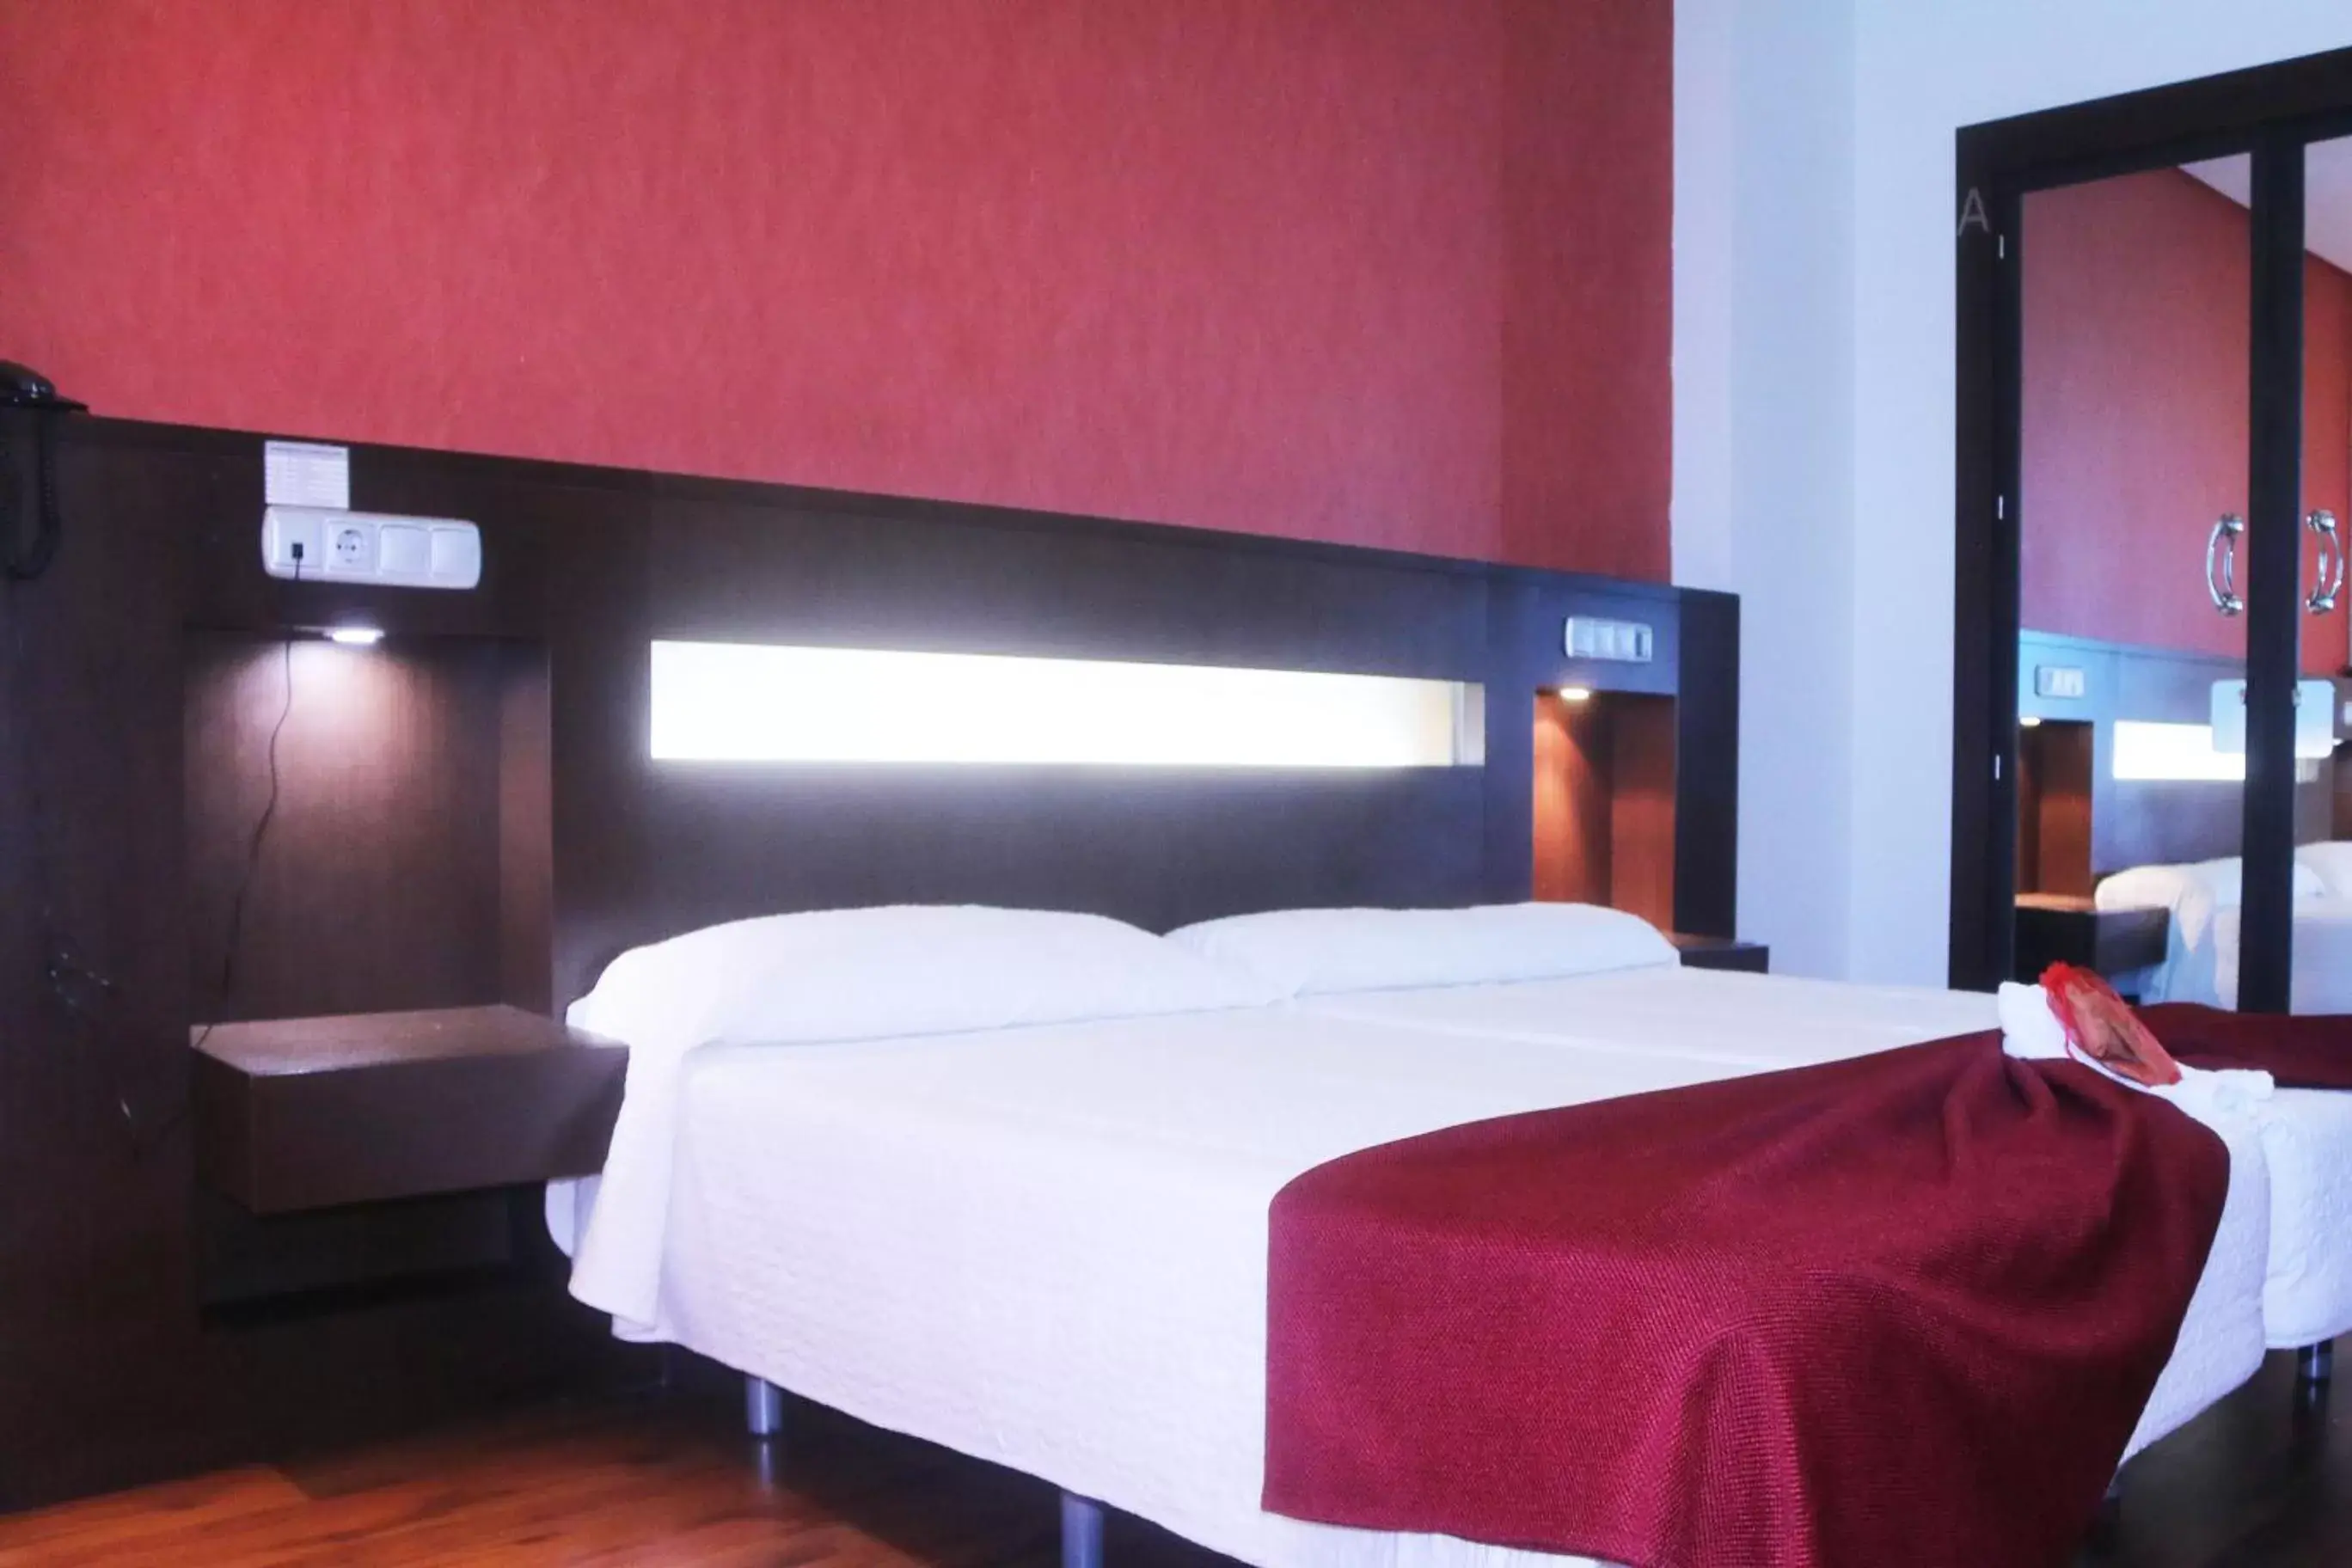 Bed, Room Photo in Hotel La Cantueña